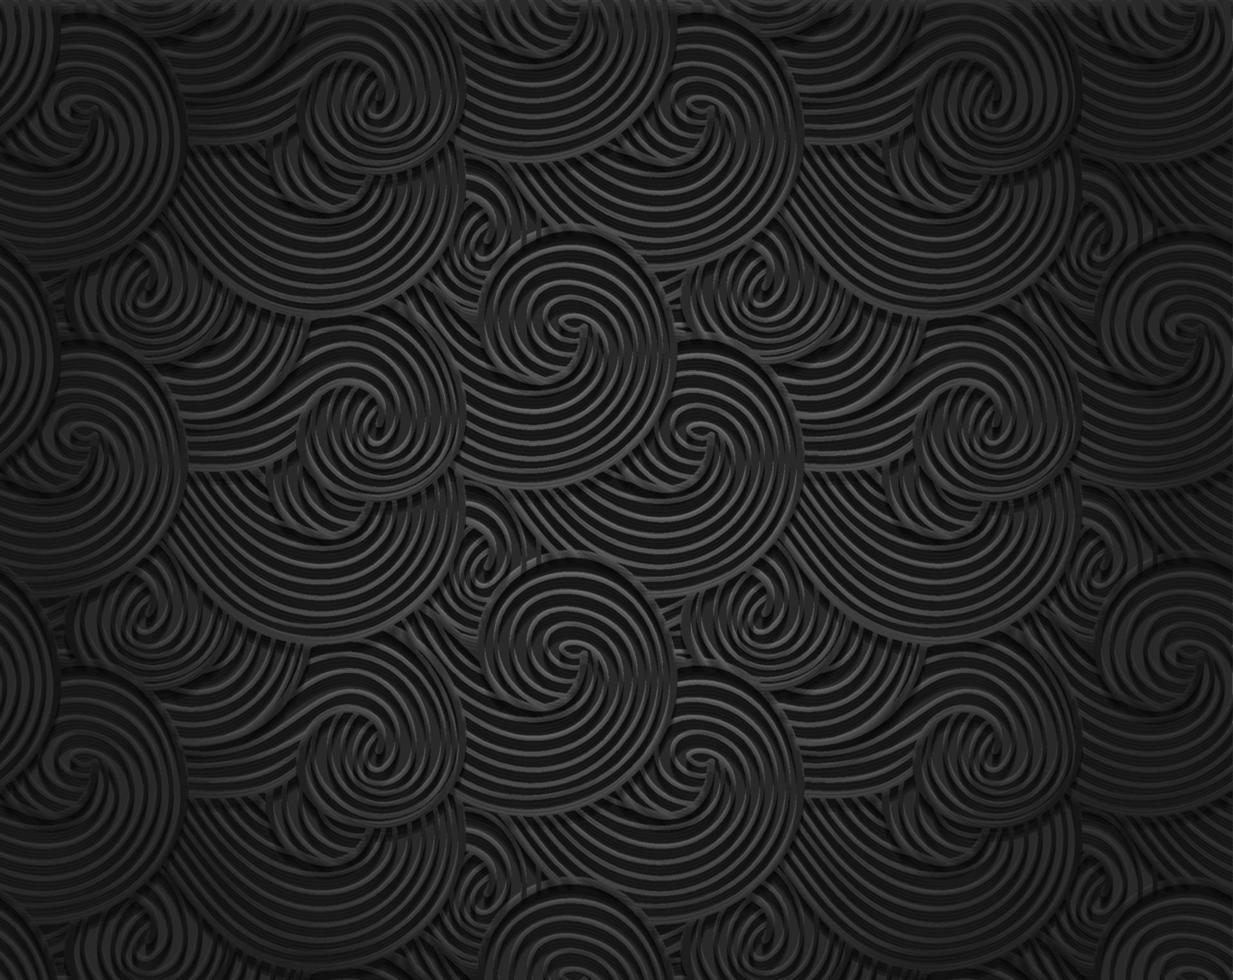 Textura de viento abstracto 3d, mar, fondo de olas oceánicas. nubes densas, humo oscuro y patrón gris vapor. ilustración vectorial vector